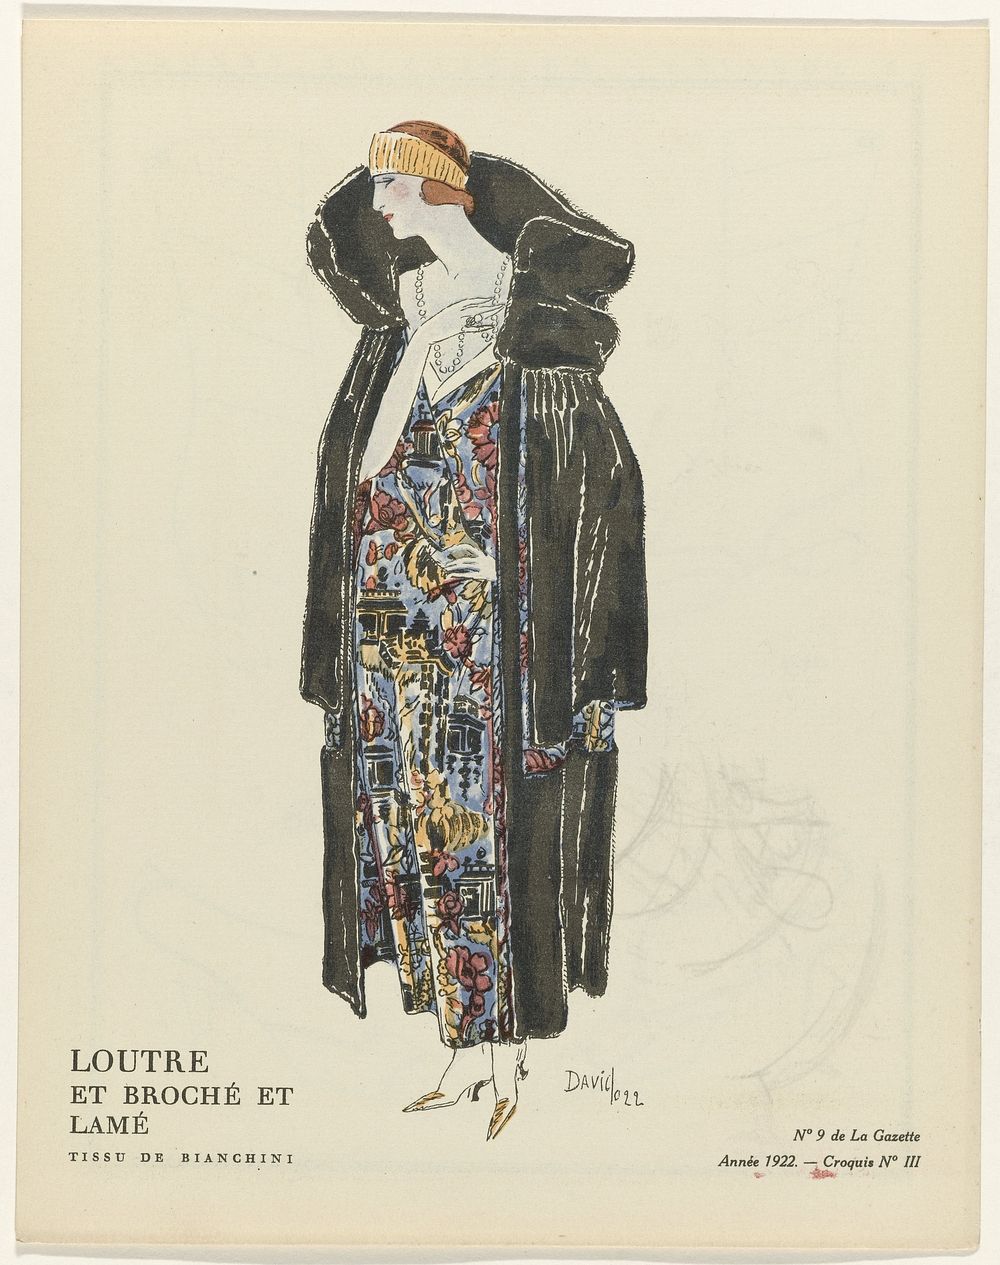 Gazette du Bon Ton, 1922 - No. 9 : Loutre et broché et lamé / Tissu de Bianchini (1922) by David, anonymous, Bianchini…